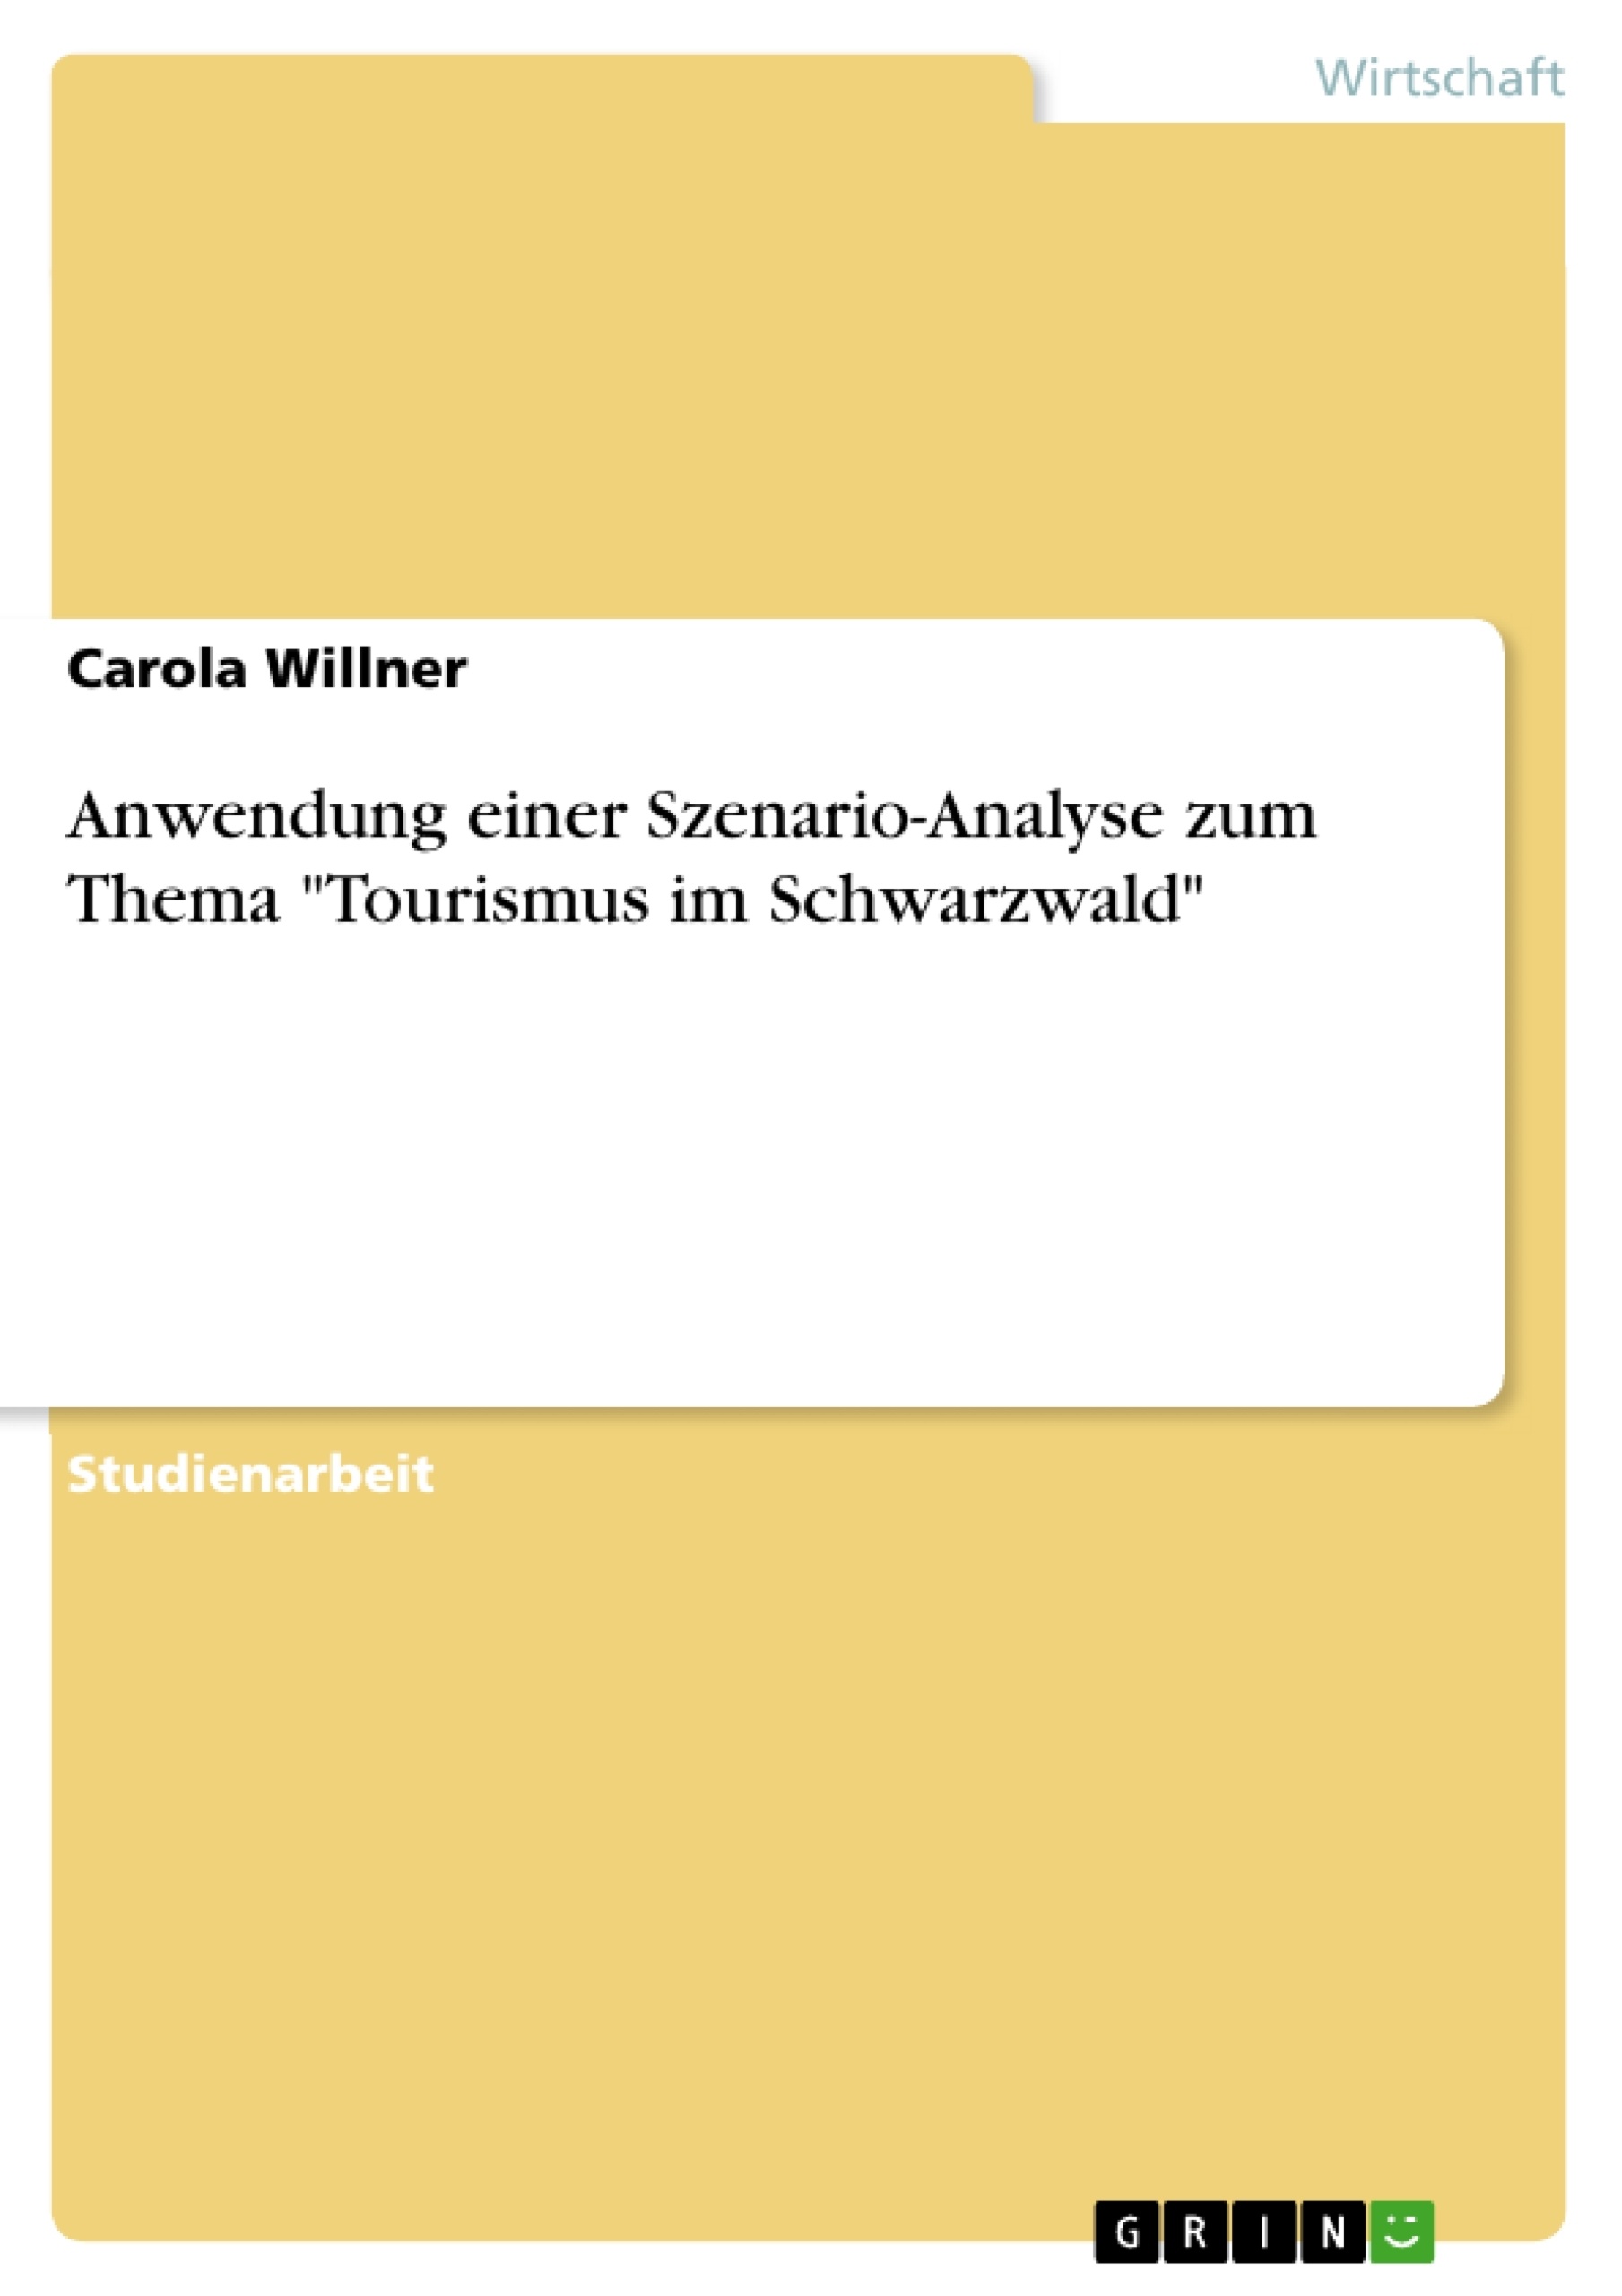 Título: Anwendung einer Szenario-Analyse zum Thema "Tourismus im Schwarzwald"